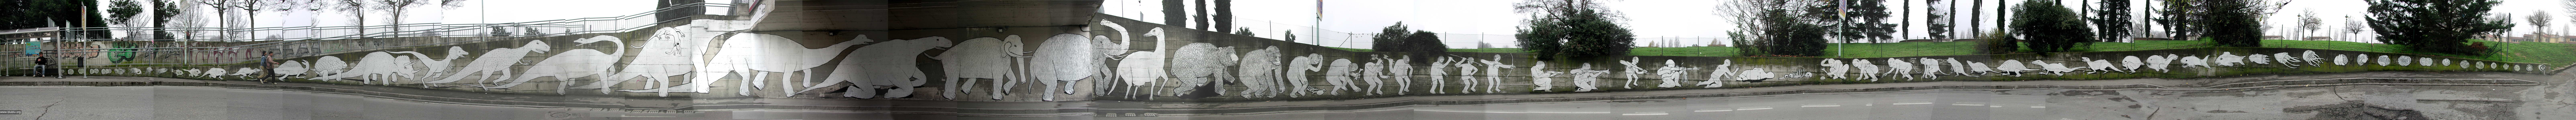 Эволюция на стене (1 фото)